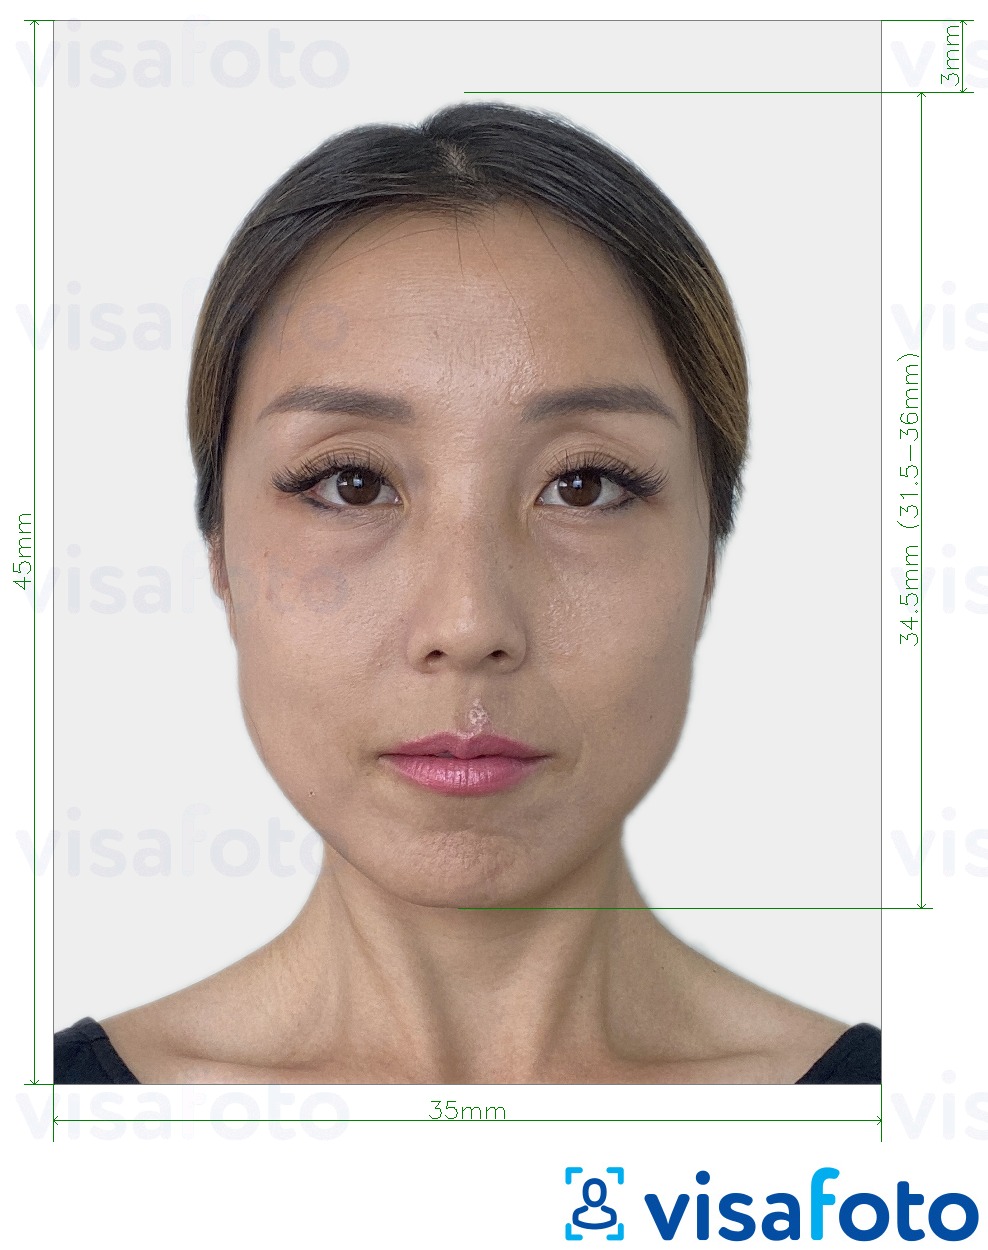 Esempio di foto per Passaporto Corea del Sud 35x45 mm (3,5x4,5 cm) con specifiche delle dimensioni esatte